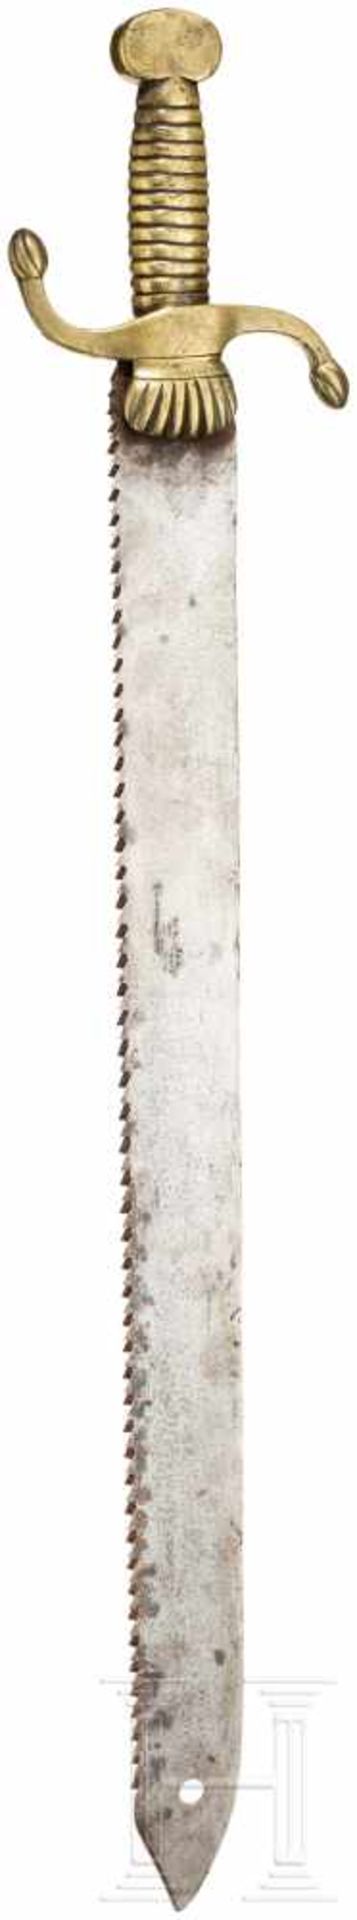 Schweres Faschinenmesser, europäisch, um 1800Kräftige Klinge (fleckig) mit Sägerücken, - Bild 2 aus 2